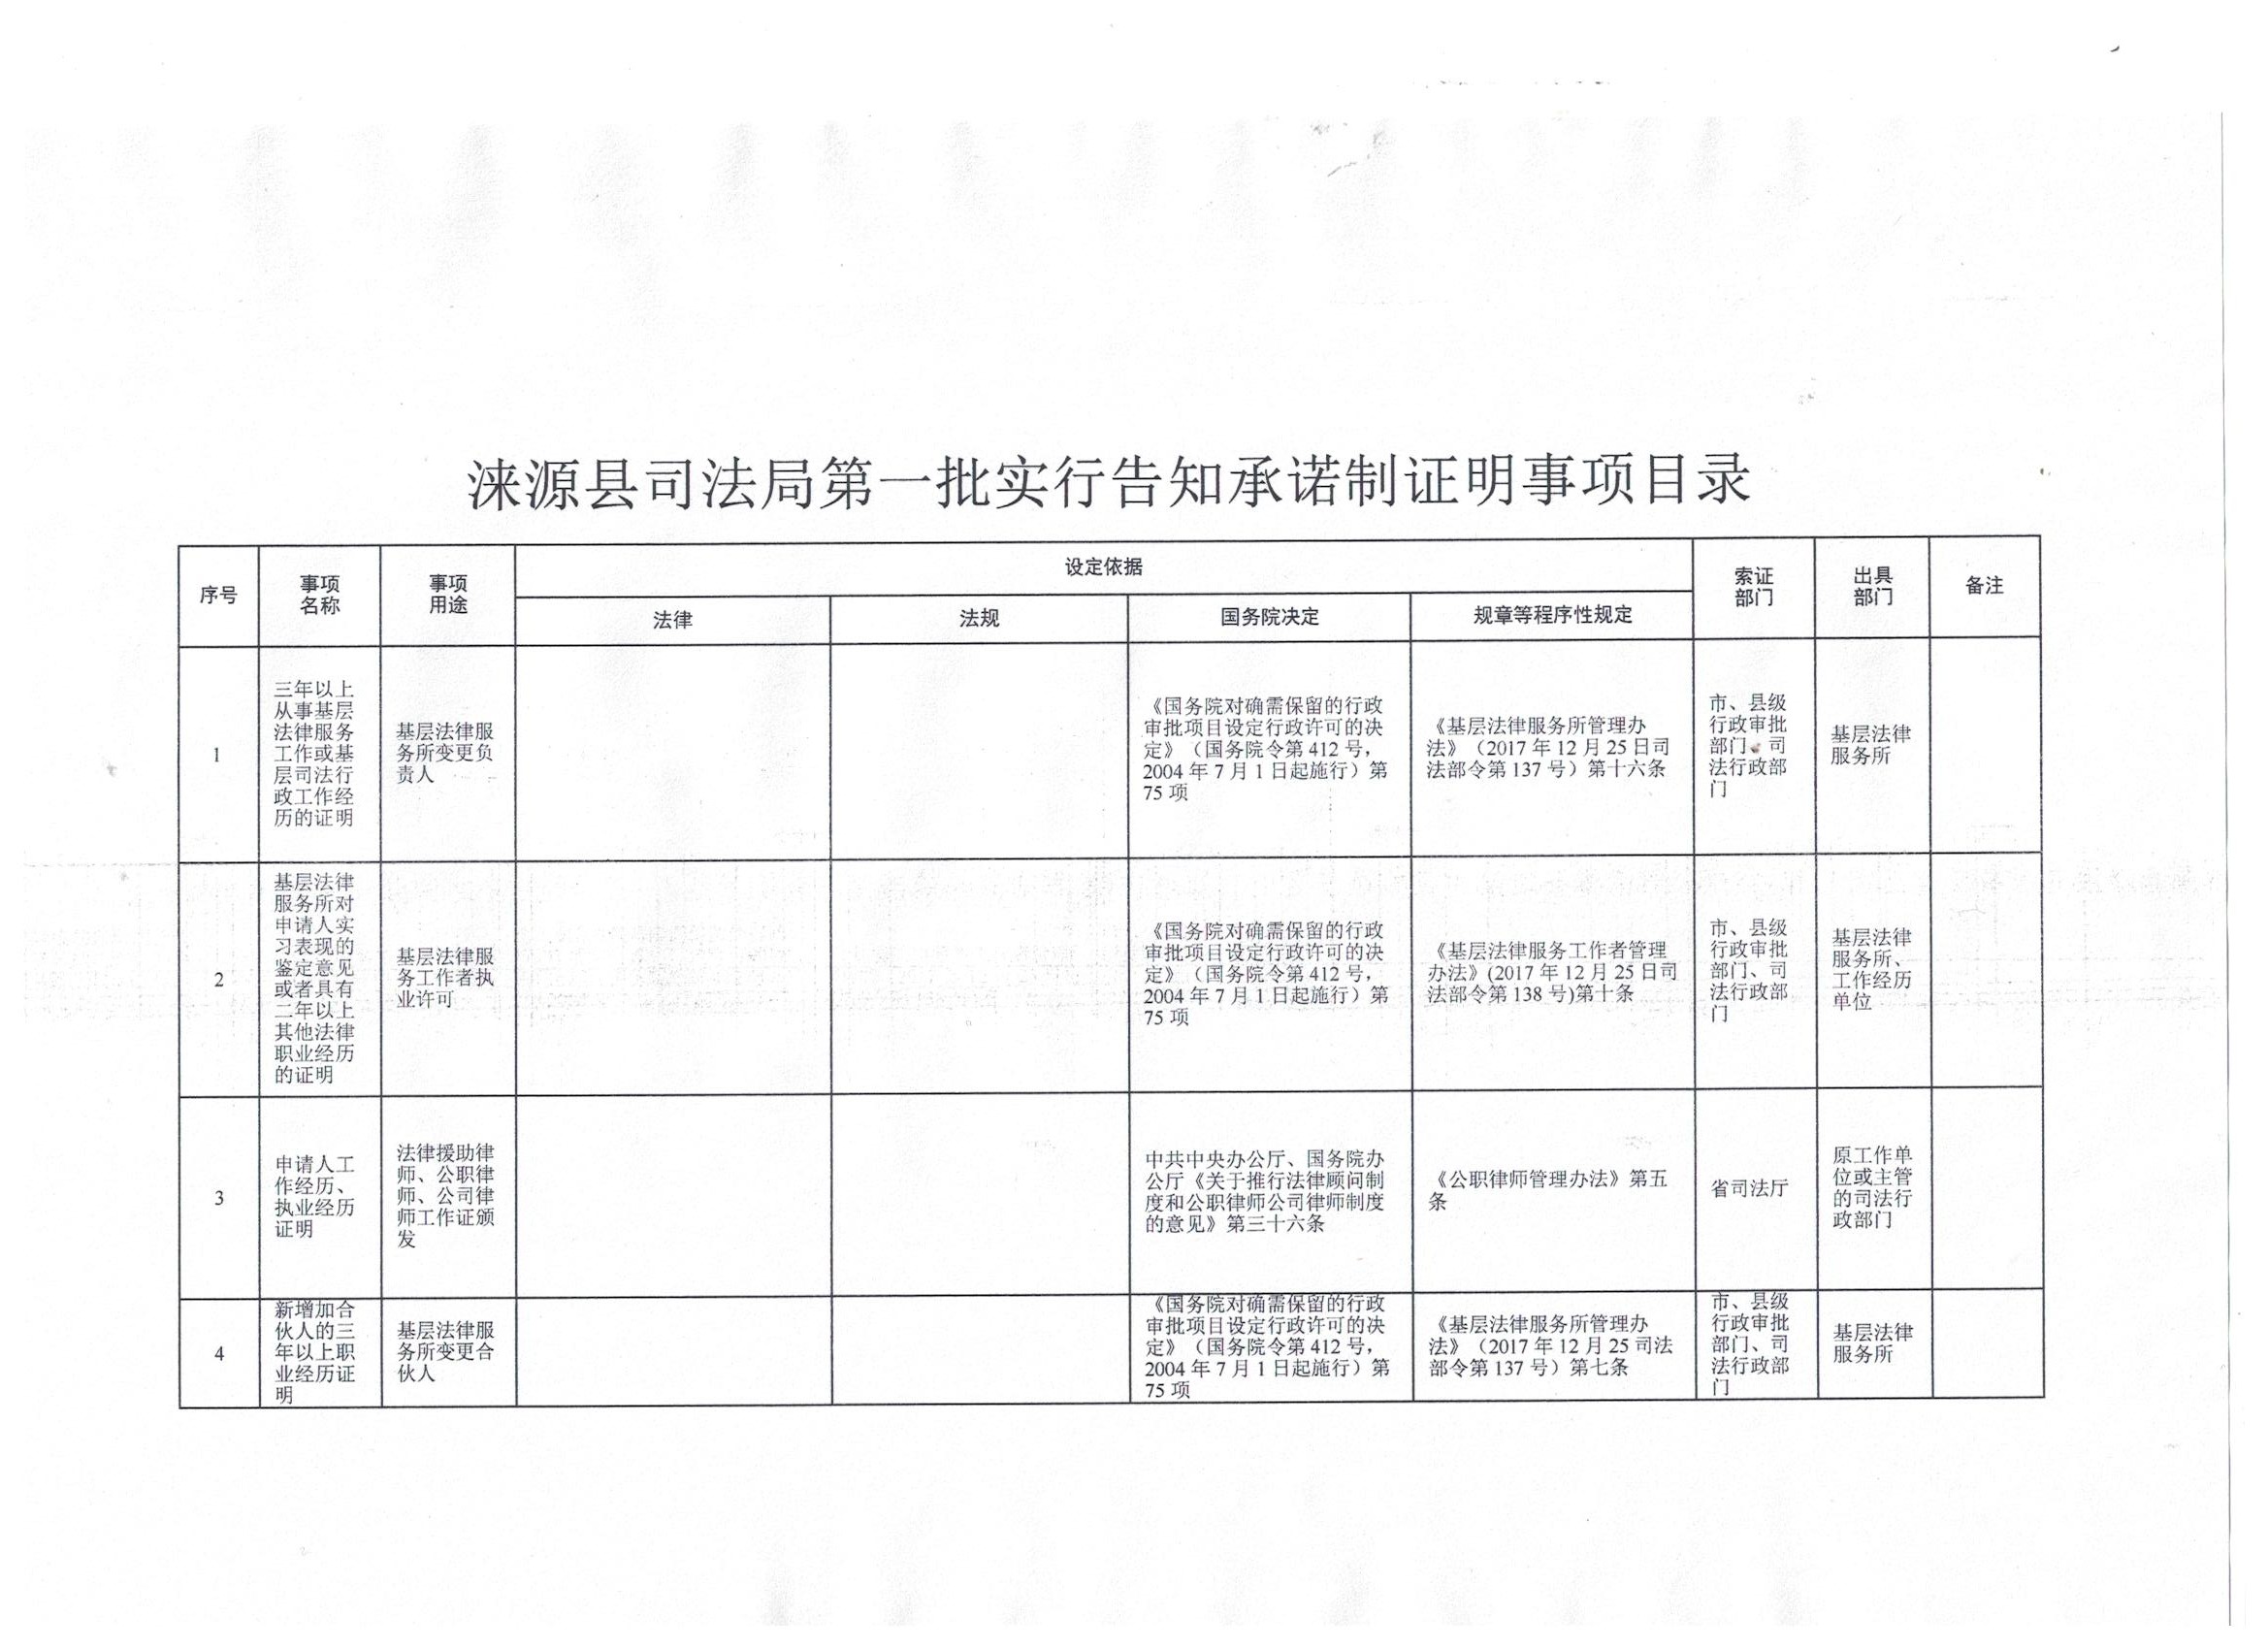 涞源县司法局第一批告知承诺制证明事项基本目录.jpg